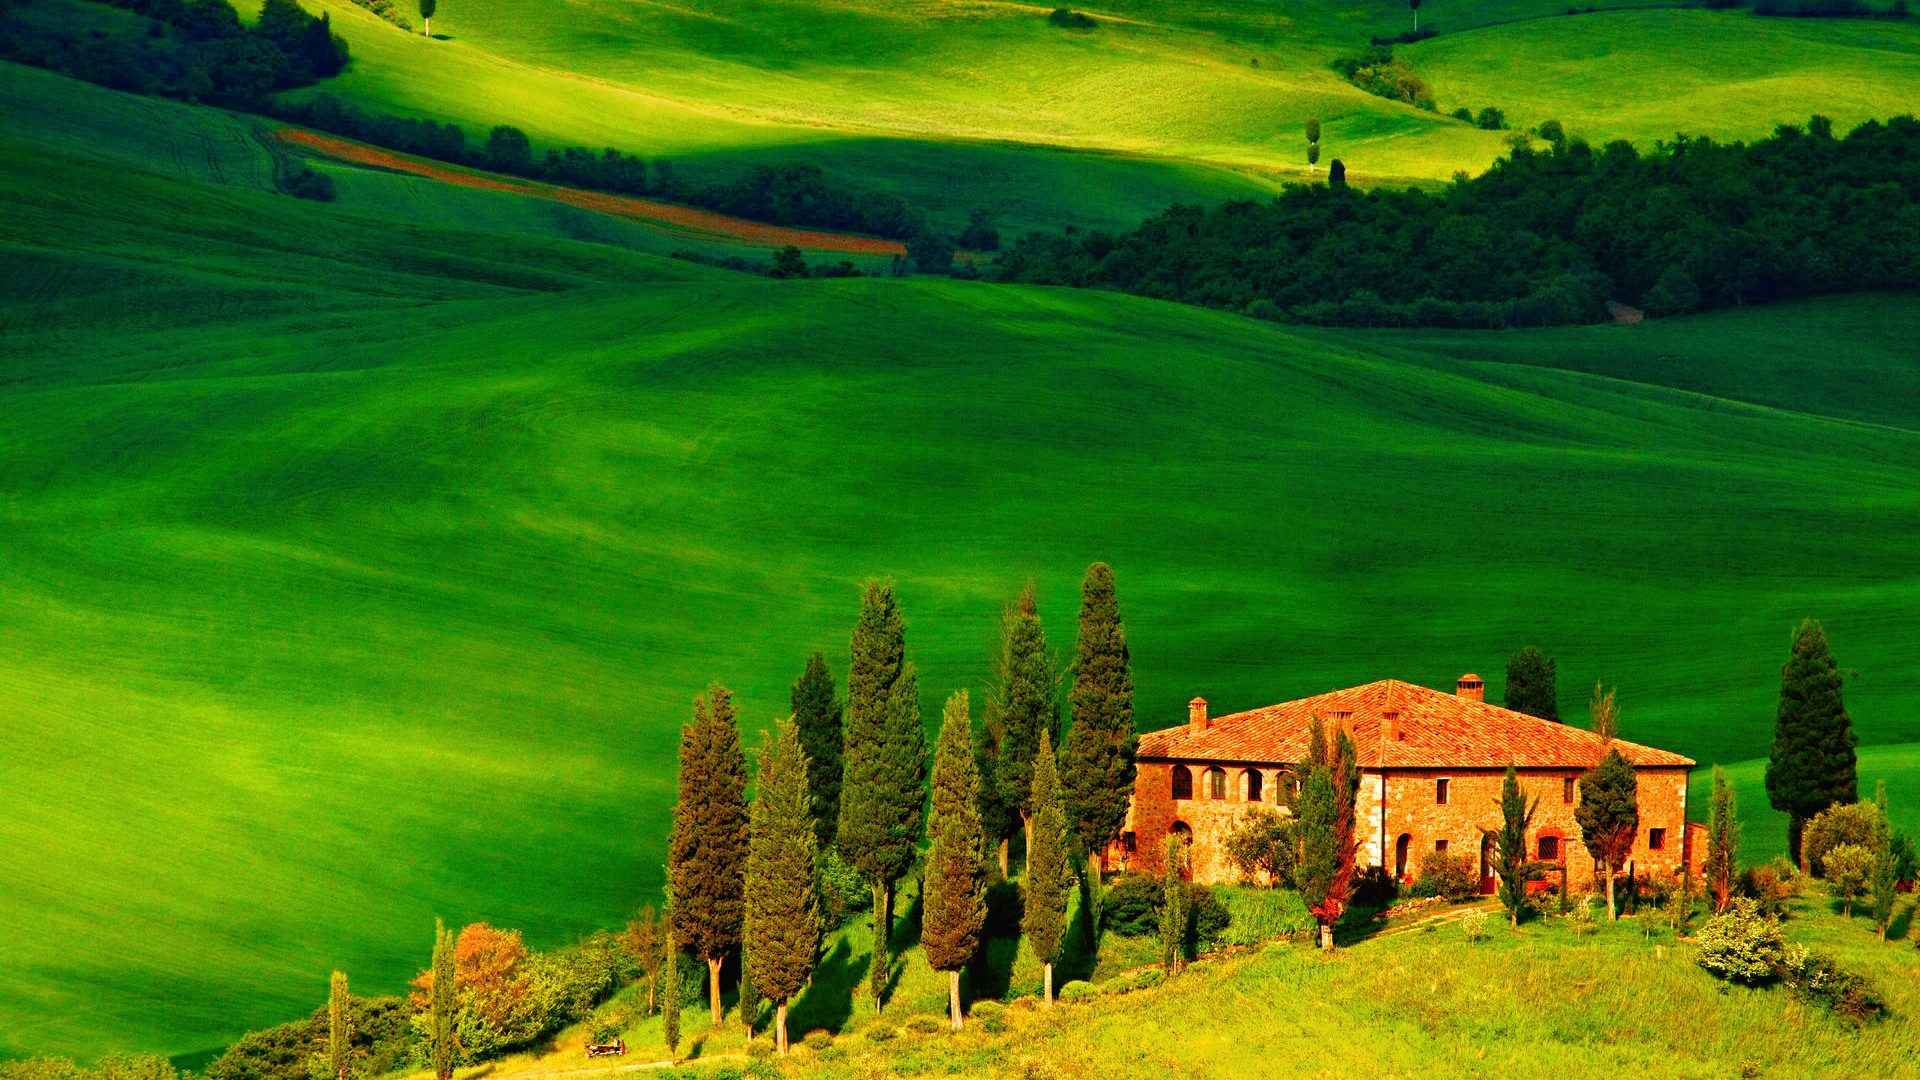 意大利托斯卡纳,房子,丘陵,树木,风景桌面壁纸